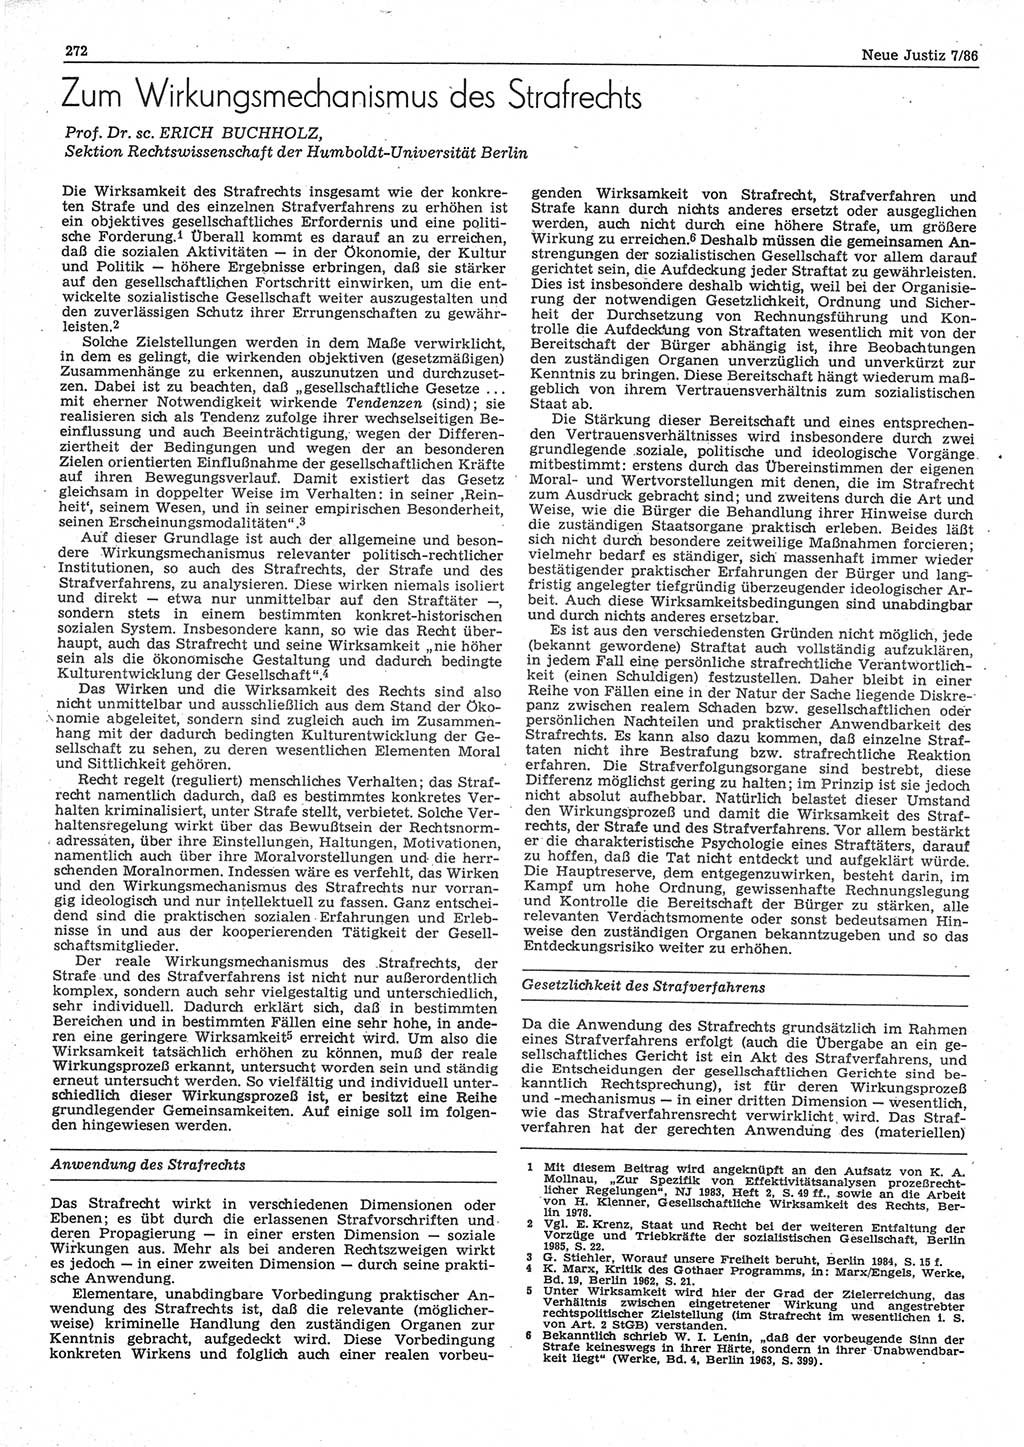 Neue Justiz (NJ), Zeitschrift für sozialistisches Recht und Gesetzlichkeit [Deutsche Demokratische Republik (DDR)], 40. Jahrgang 1986, Seite 272 (NJ DDR 1986, S. 272)